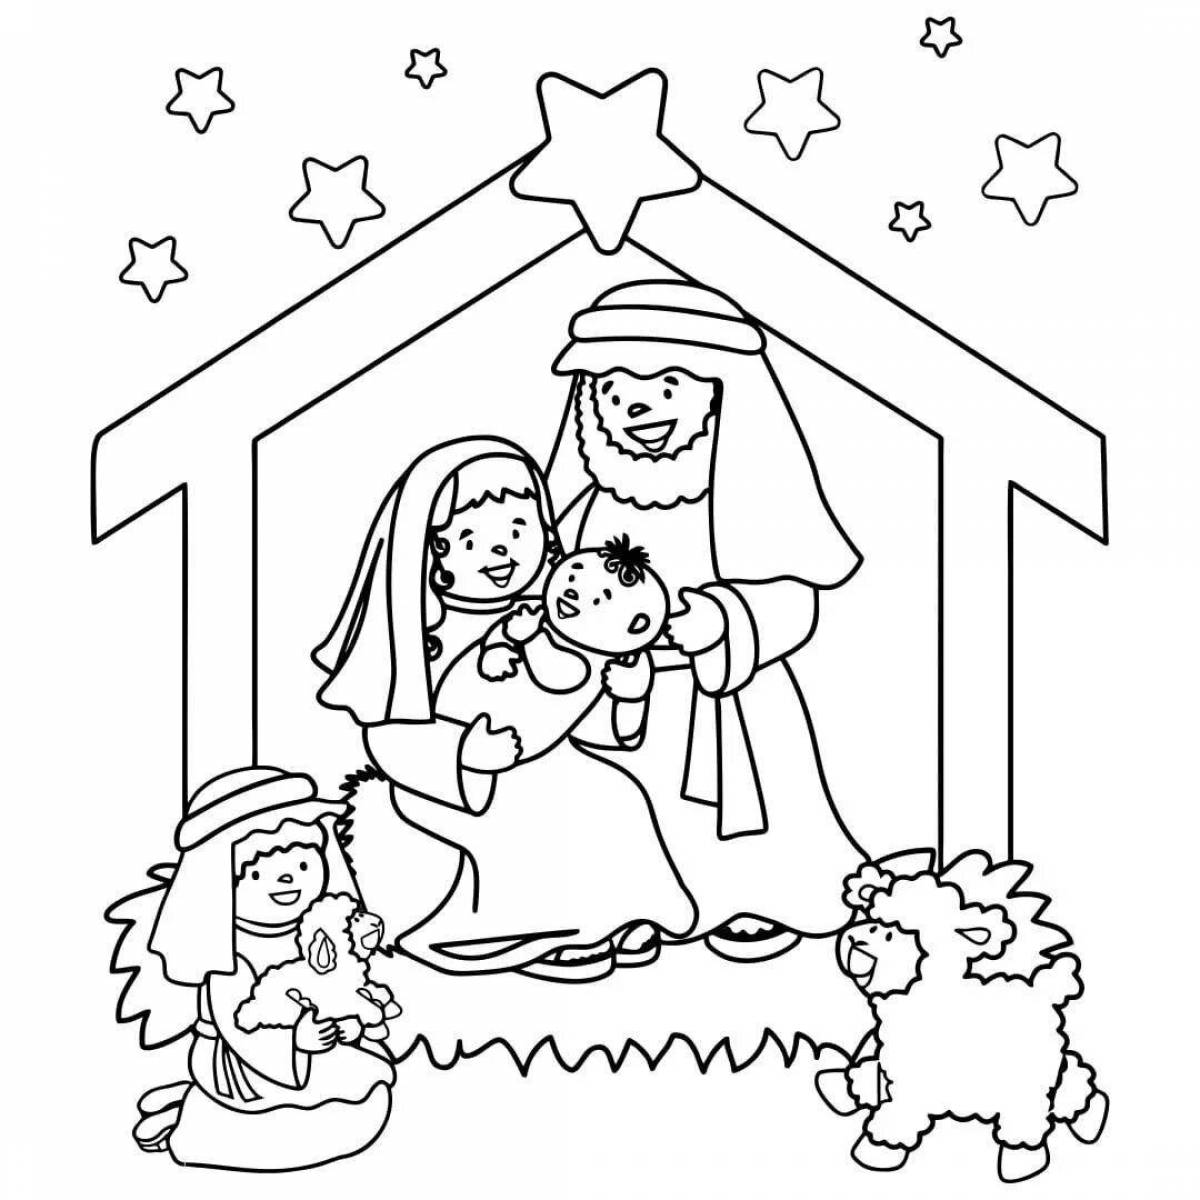 Serene nativity scene coloring book for kids